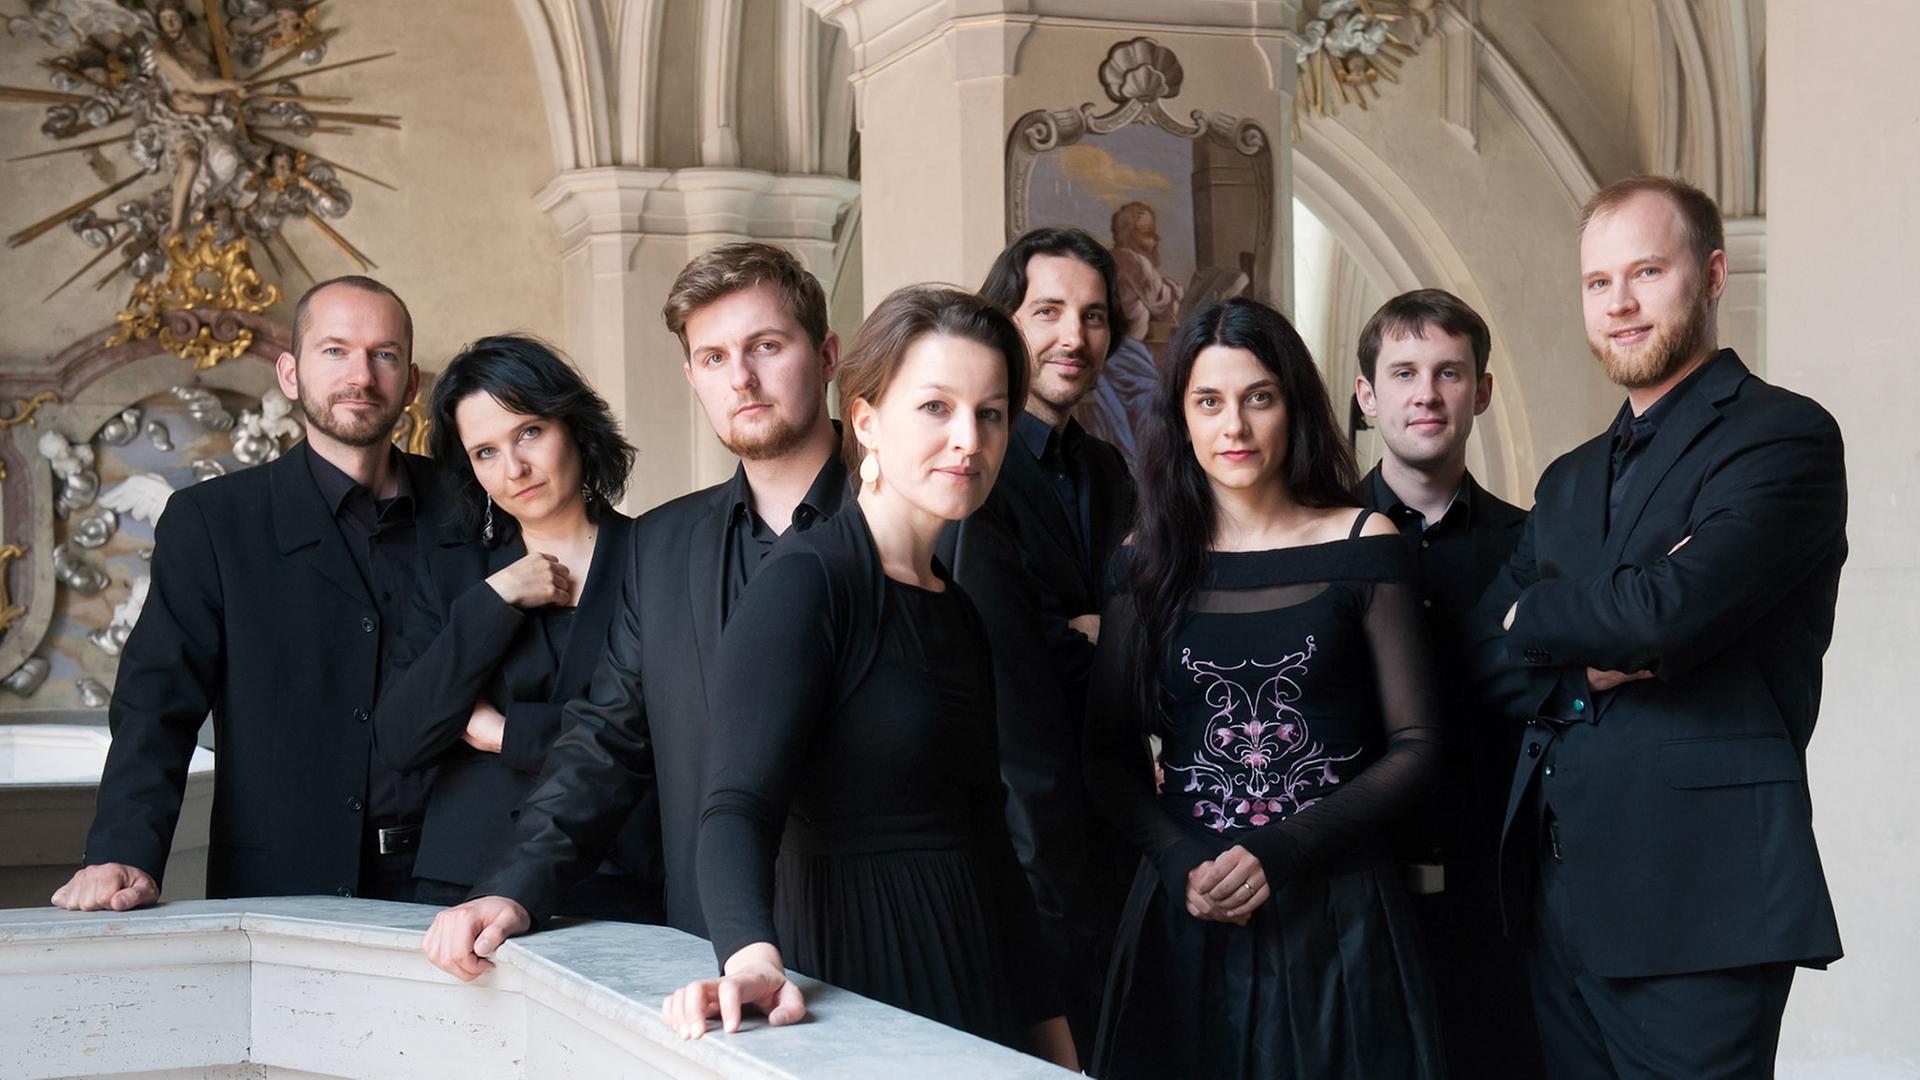 Acht Männer und Frauen sind auf dem Bild zu sehen. Sie tragen schwarze Konzertkleidung. Zusammen bilden sie das Ensemble Cappella Mariana.